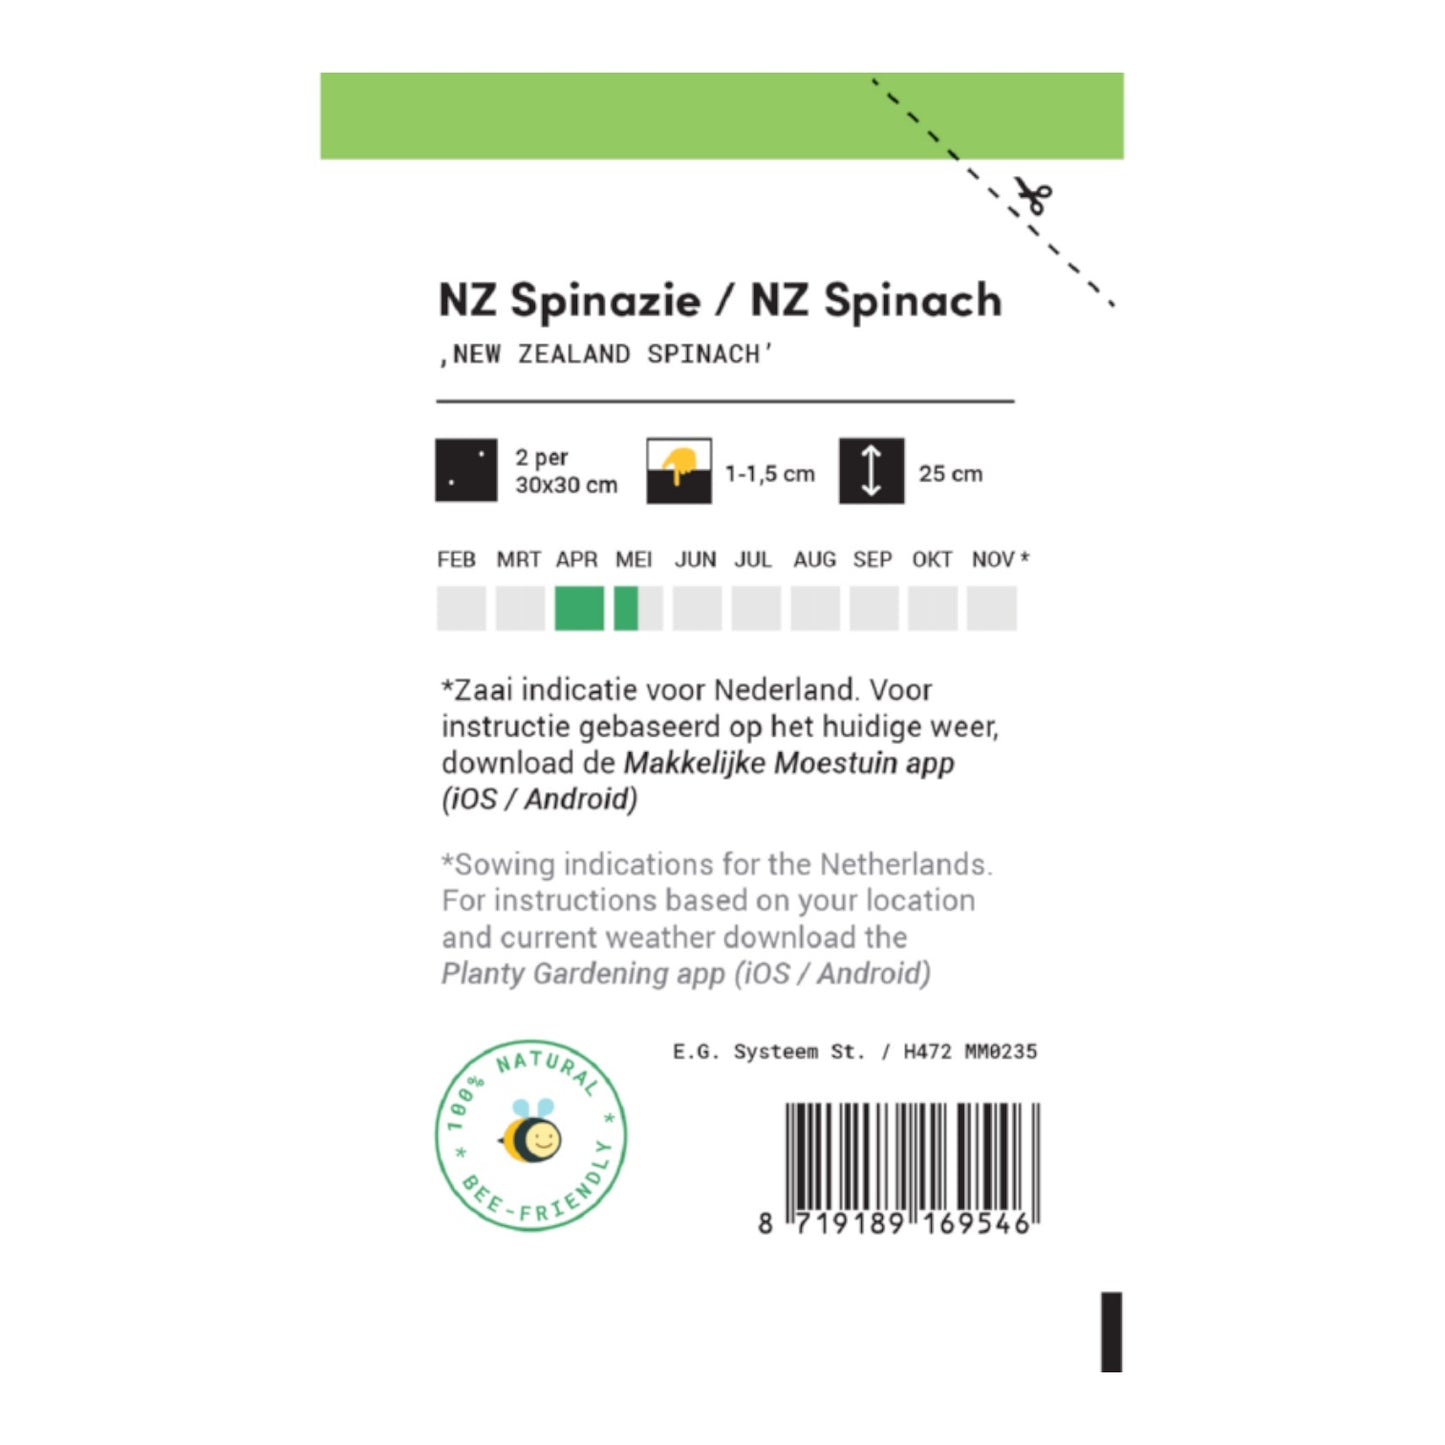 NZ Spinach